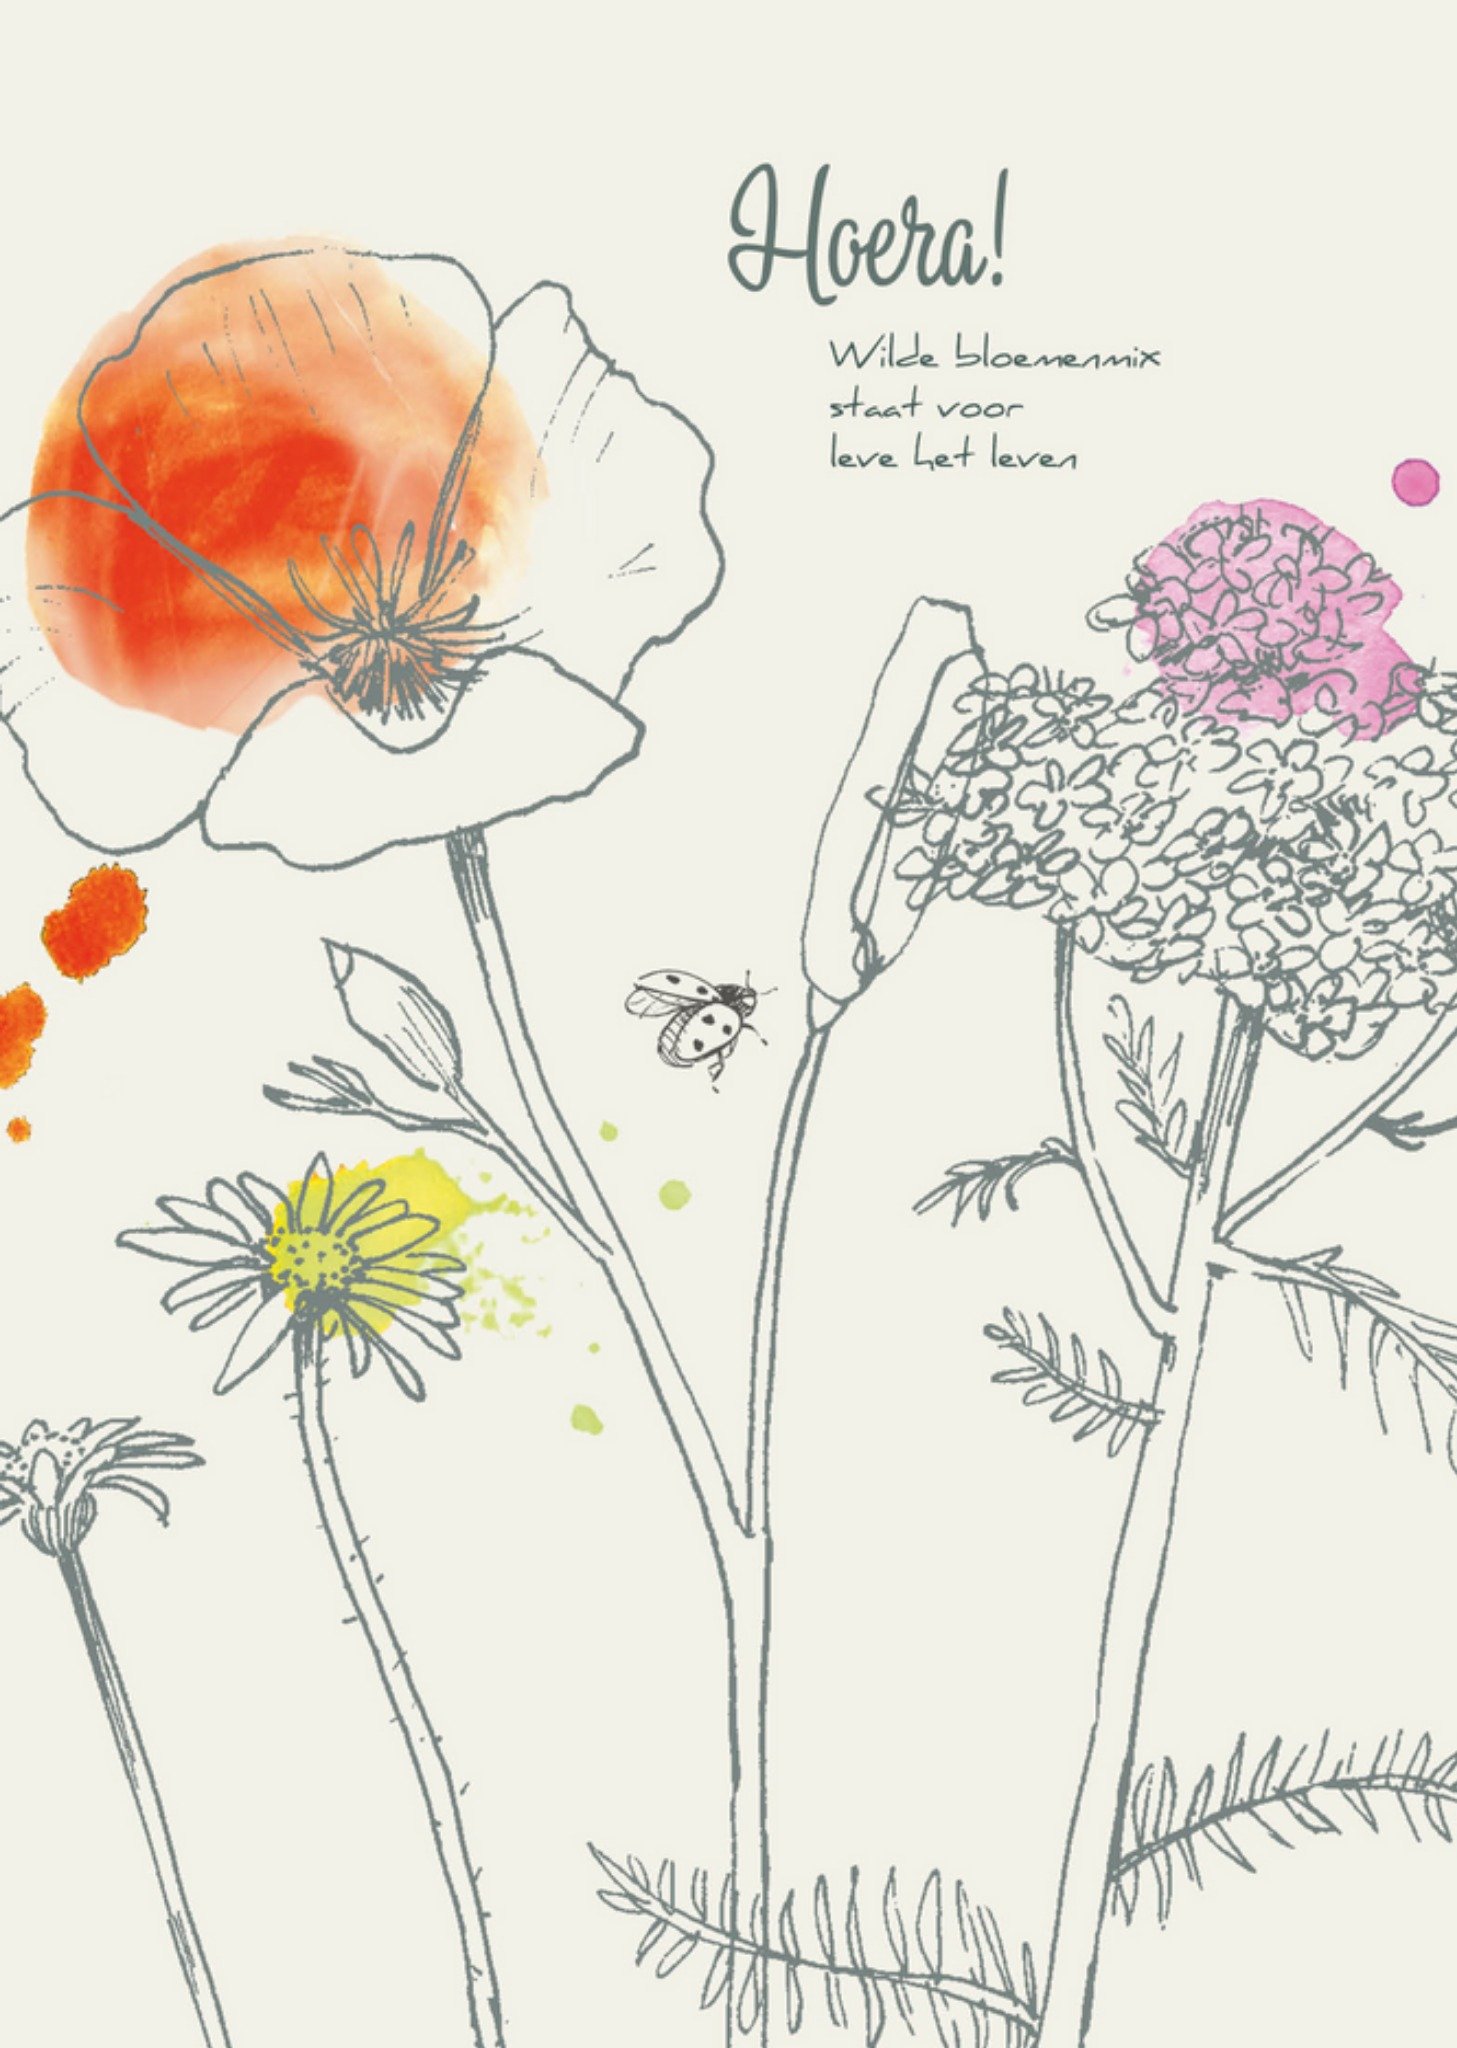 VeerMoon - Verjaardagskaart - Wilde bloemen voor leve het leven